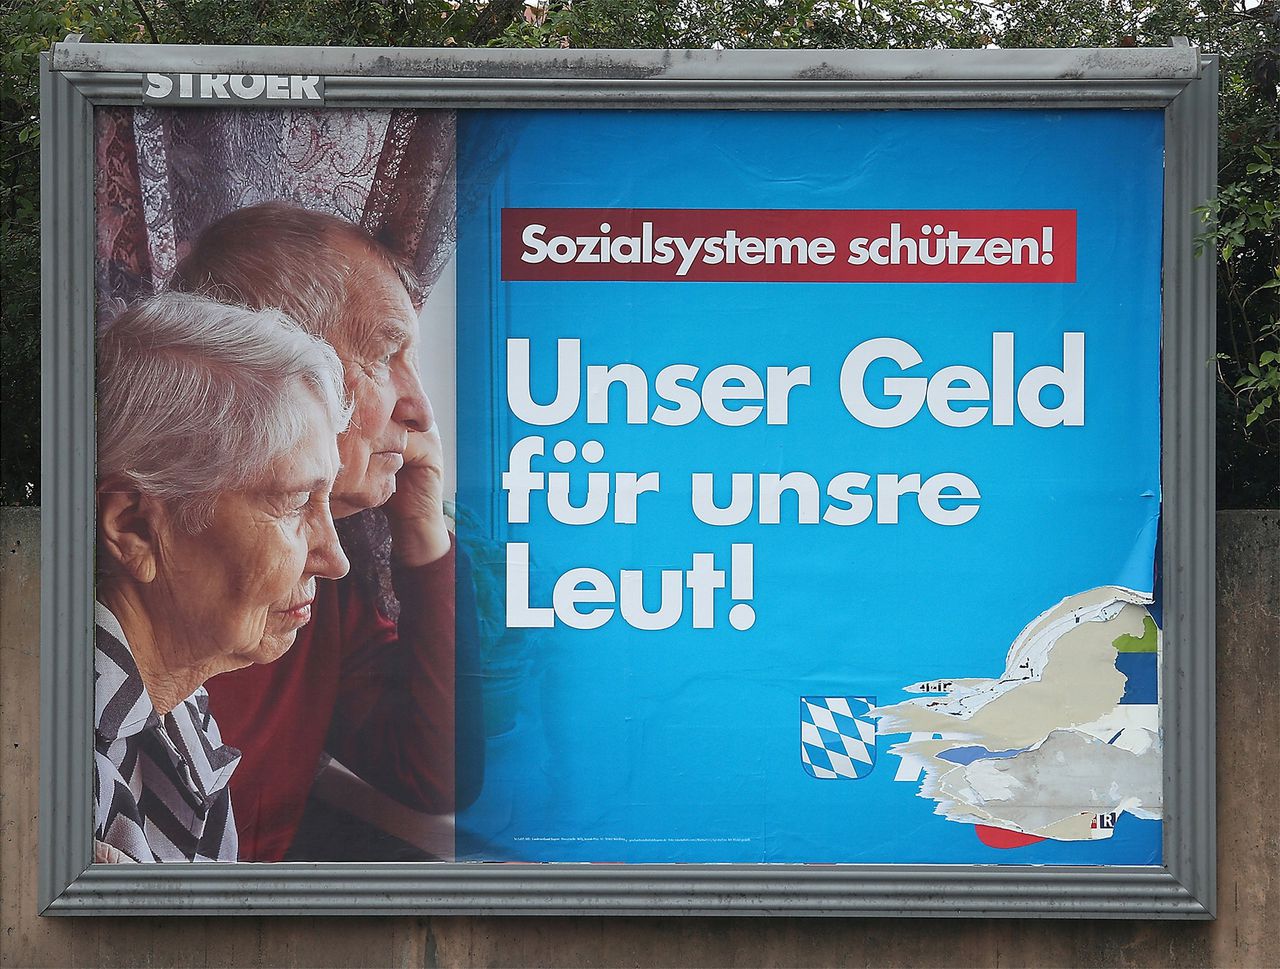 Een campagneposter voor Alternative für Deutschland